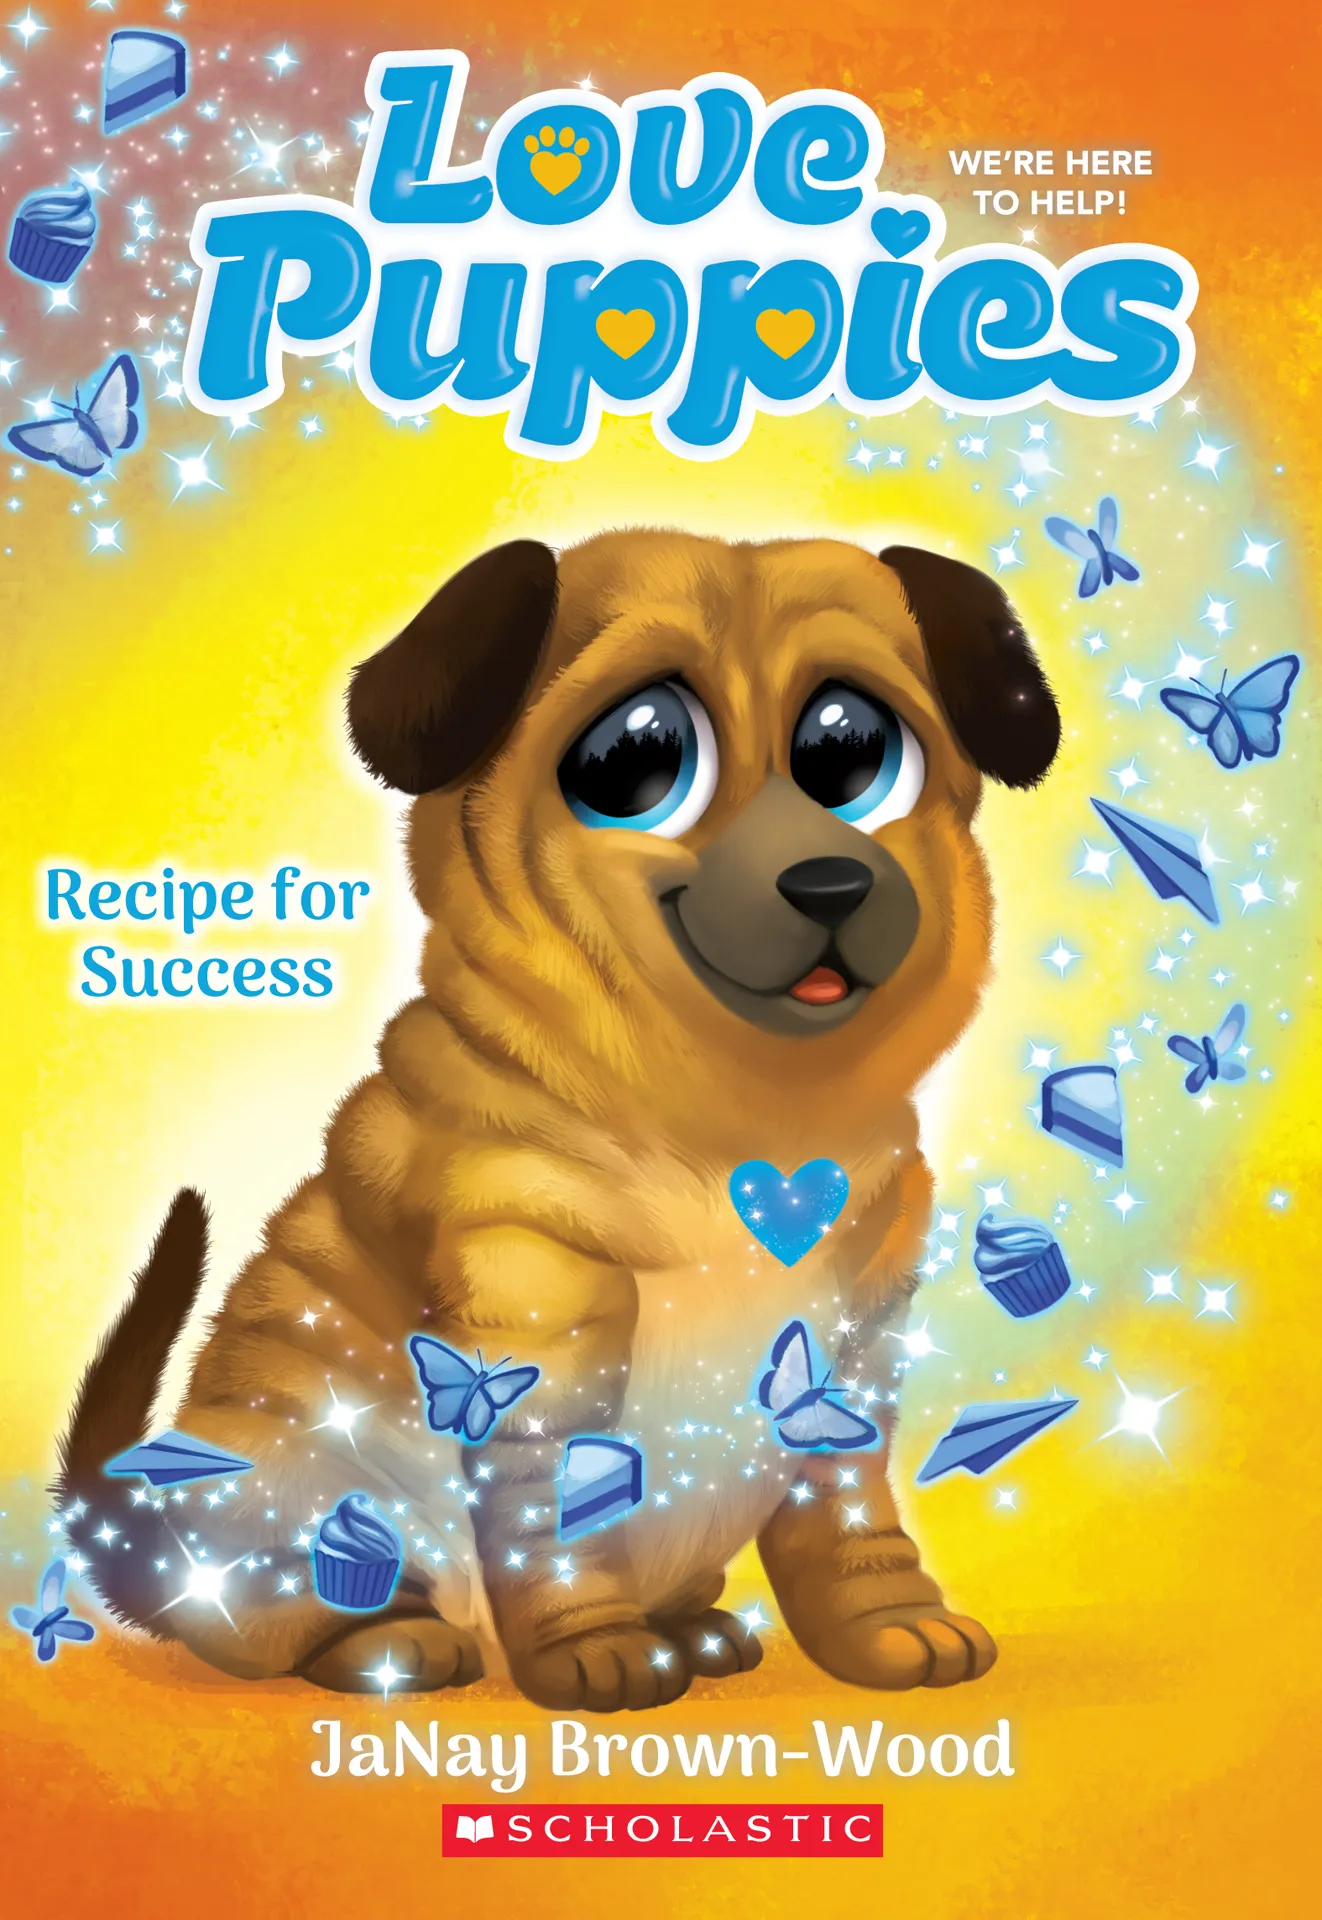 Recipe for Success (Love Puppies #4)